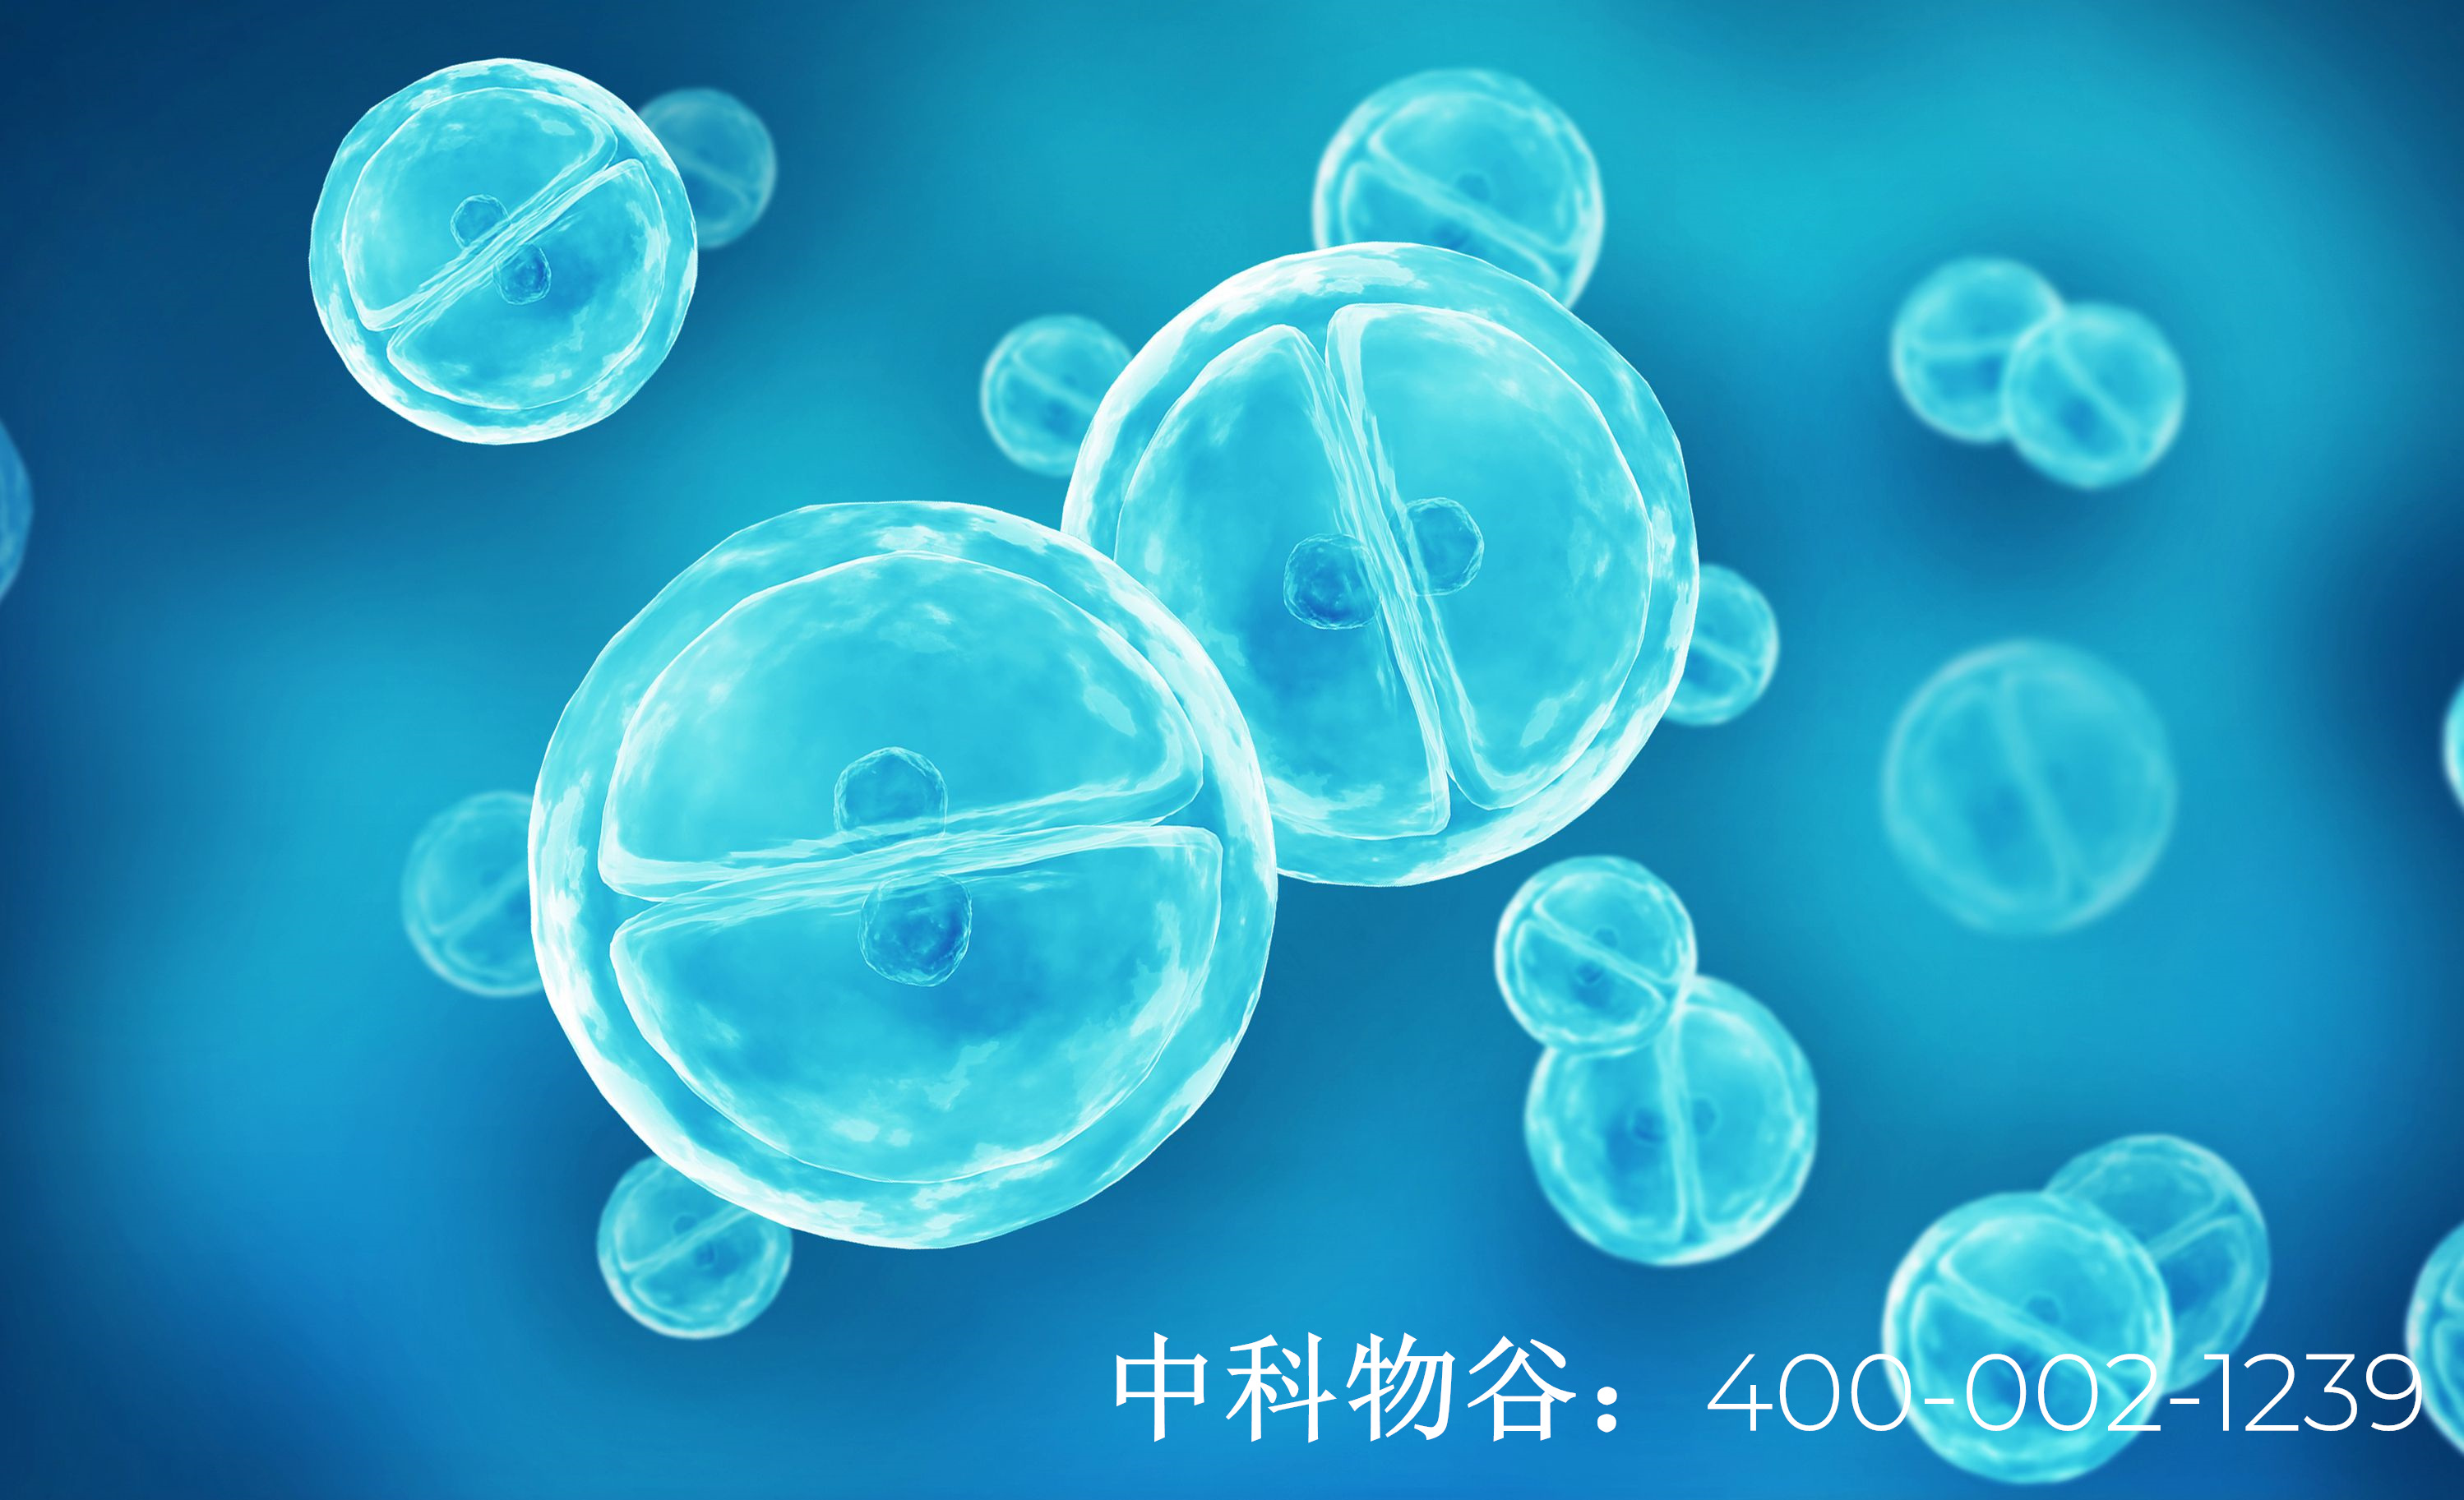 北京哪家医院能用生物免疫疗法治疗肺癌